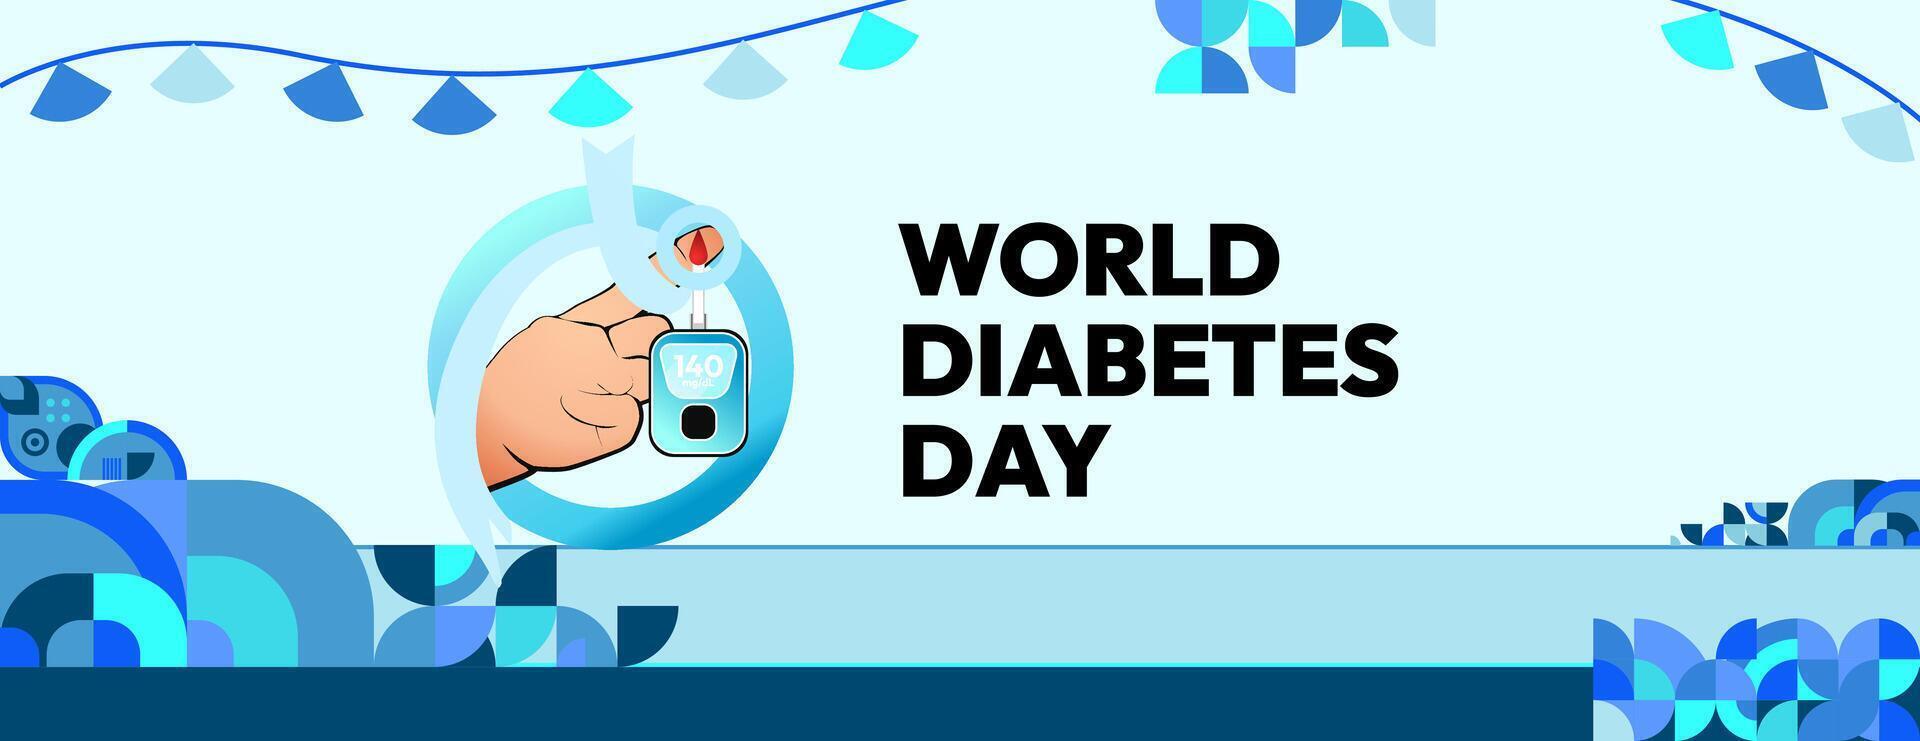 värld diabetes dag baner för medvetenhet och oro. geometrisk baner för internationell diabetes dag. vektor